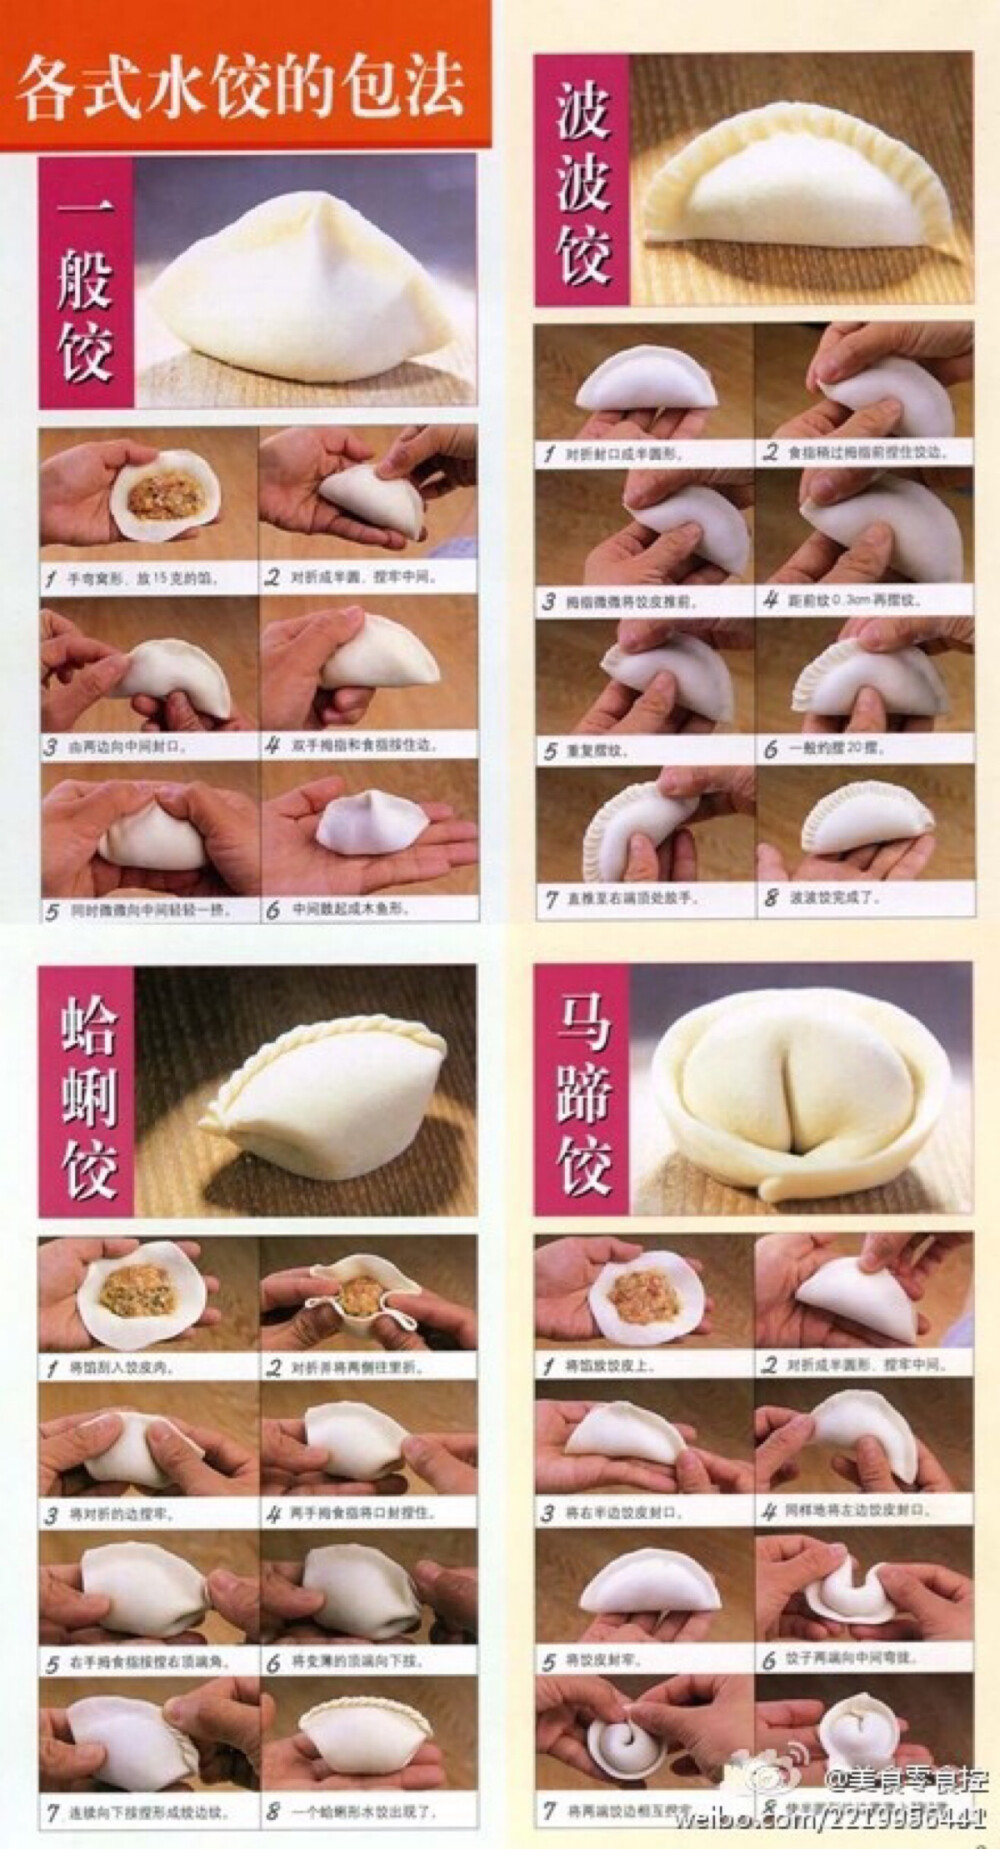 包水饺的几种方法.手工.diy.美食吃货